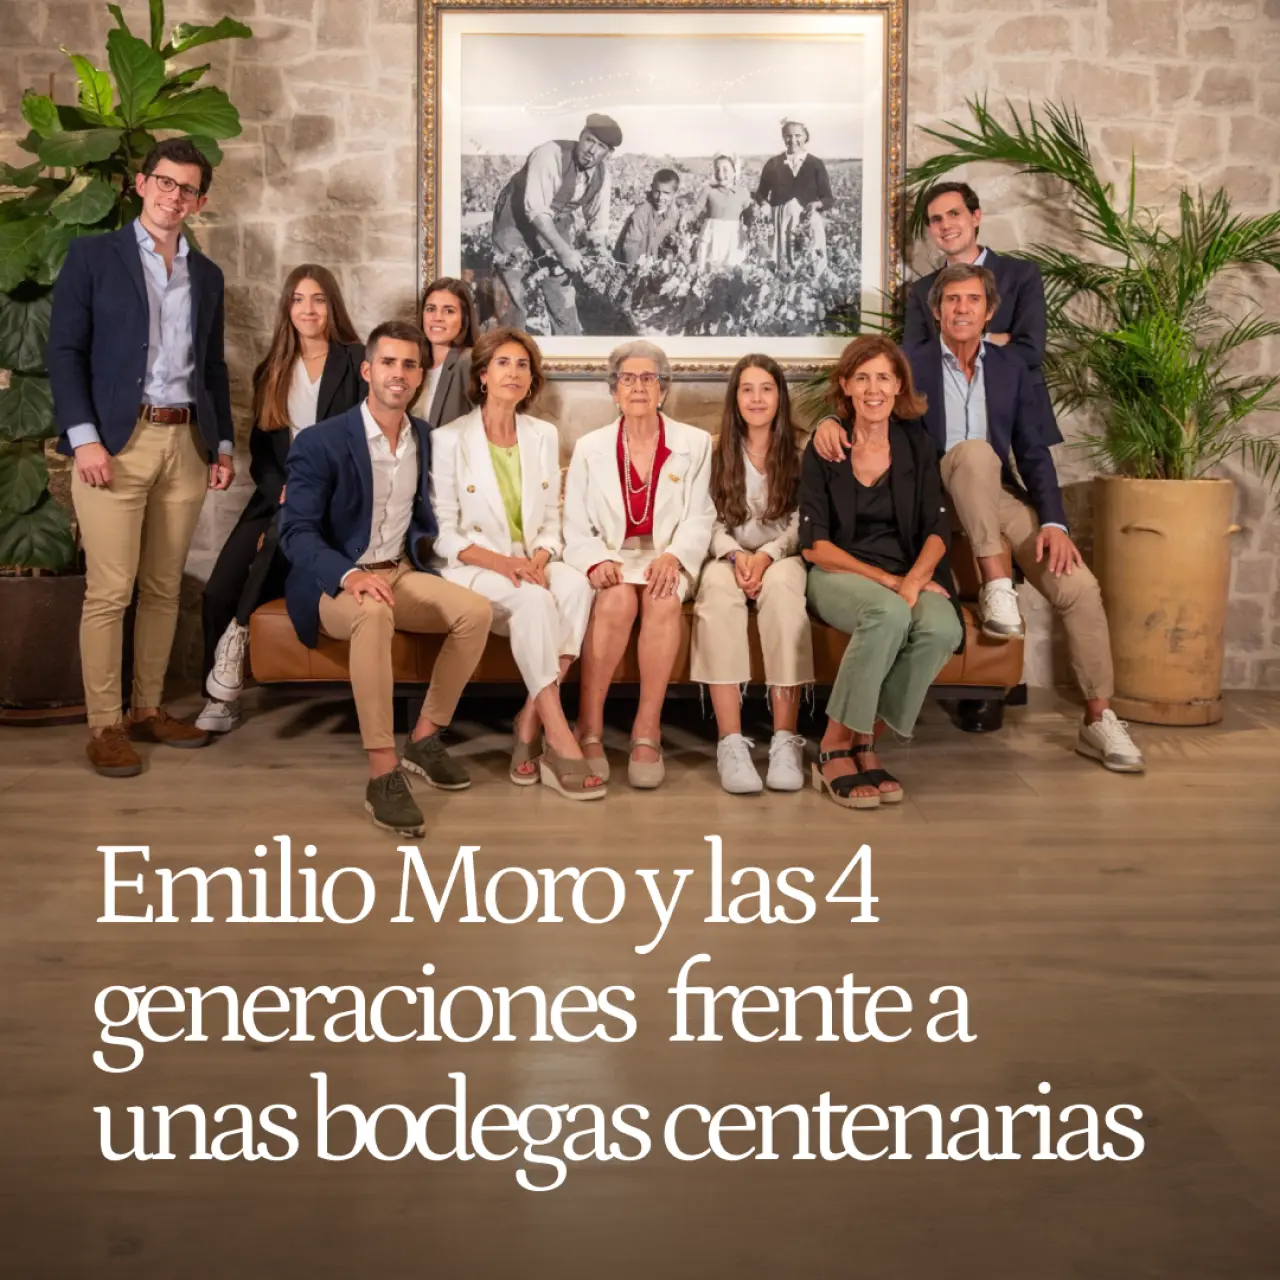 Emilio Moro y las 4 generaciones al frente de unas bodegas centenarias: desde la Ribera del Duero y El Bierzo facturan 40 millones